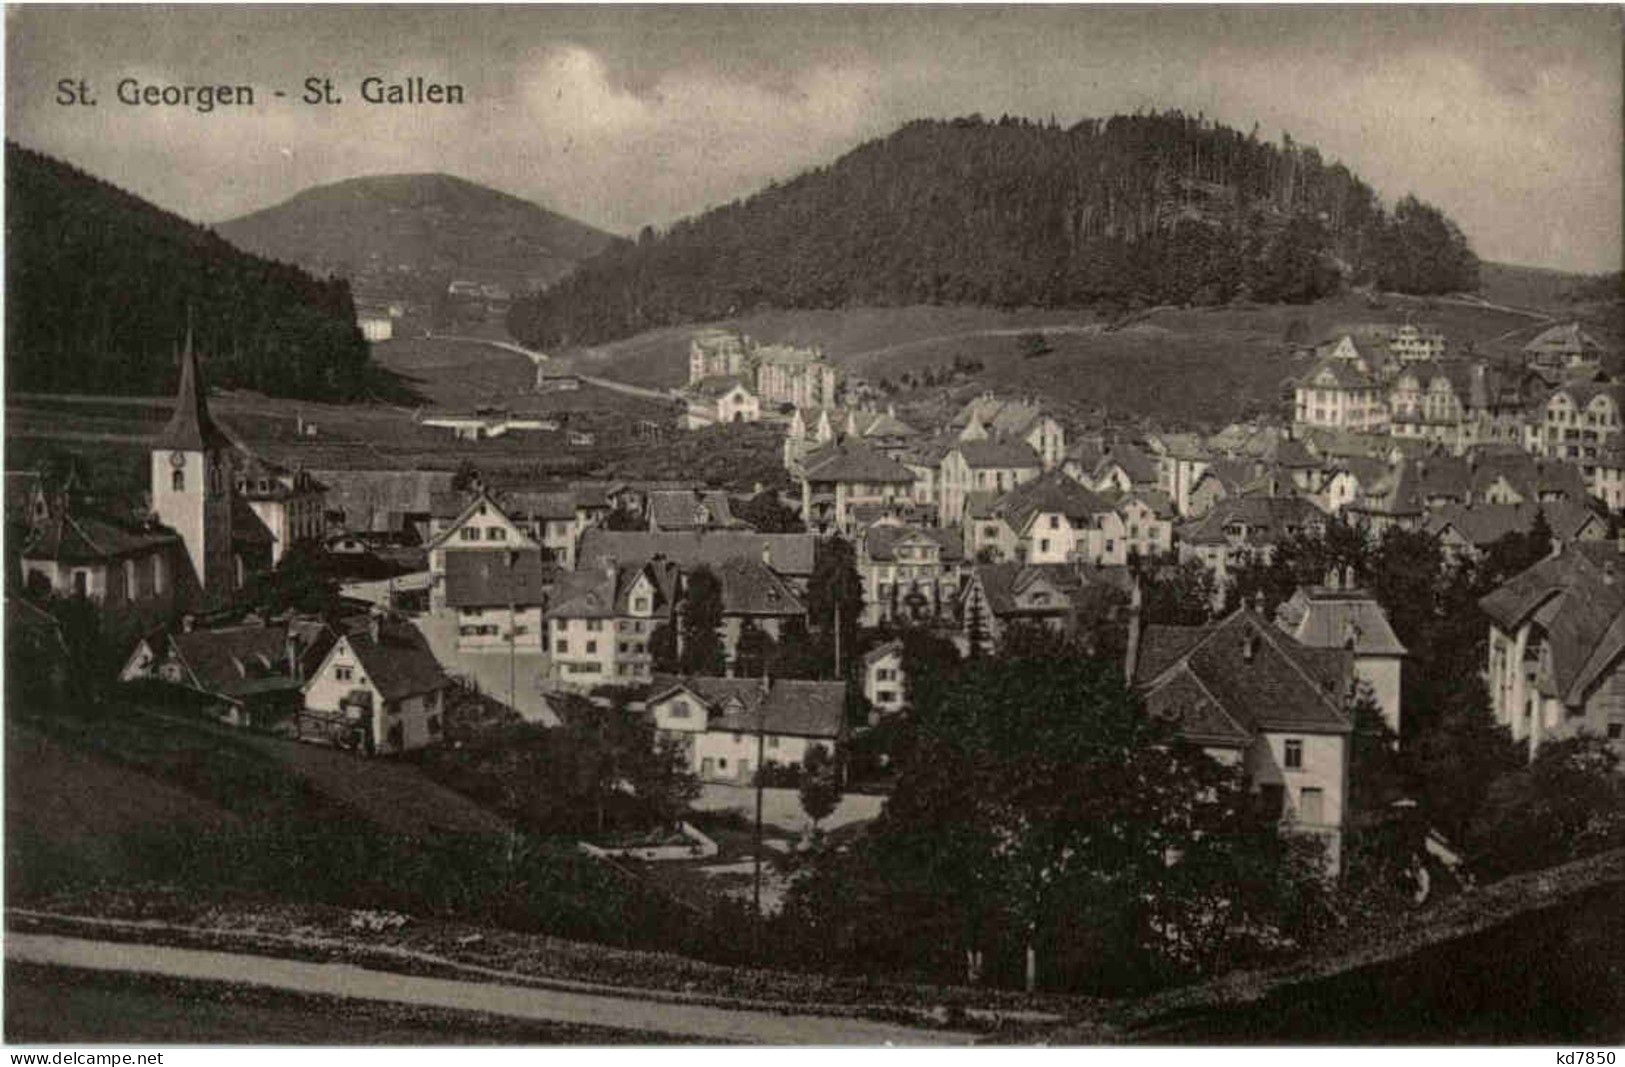 St. Gallen - St. Georgen - Saint-Gall